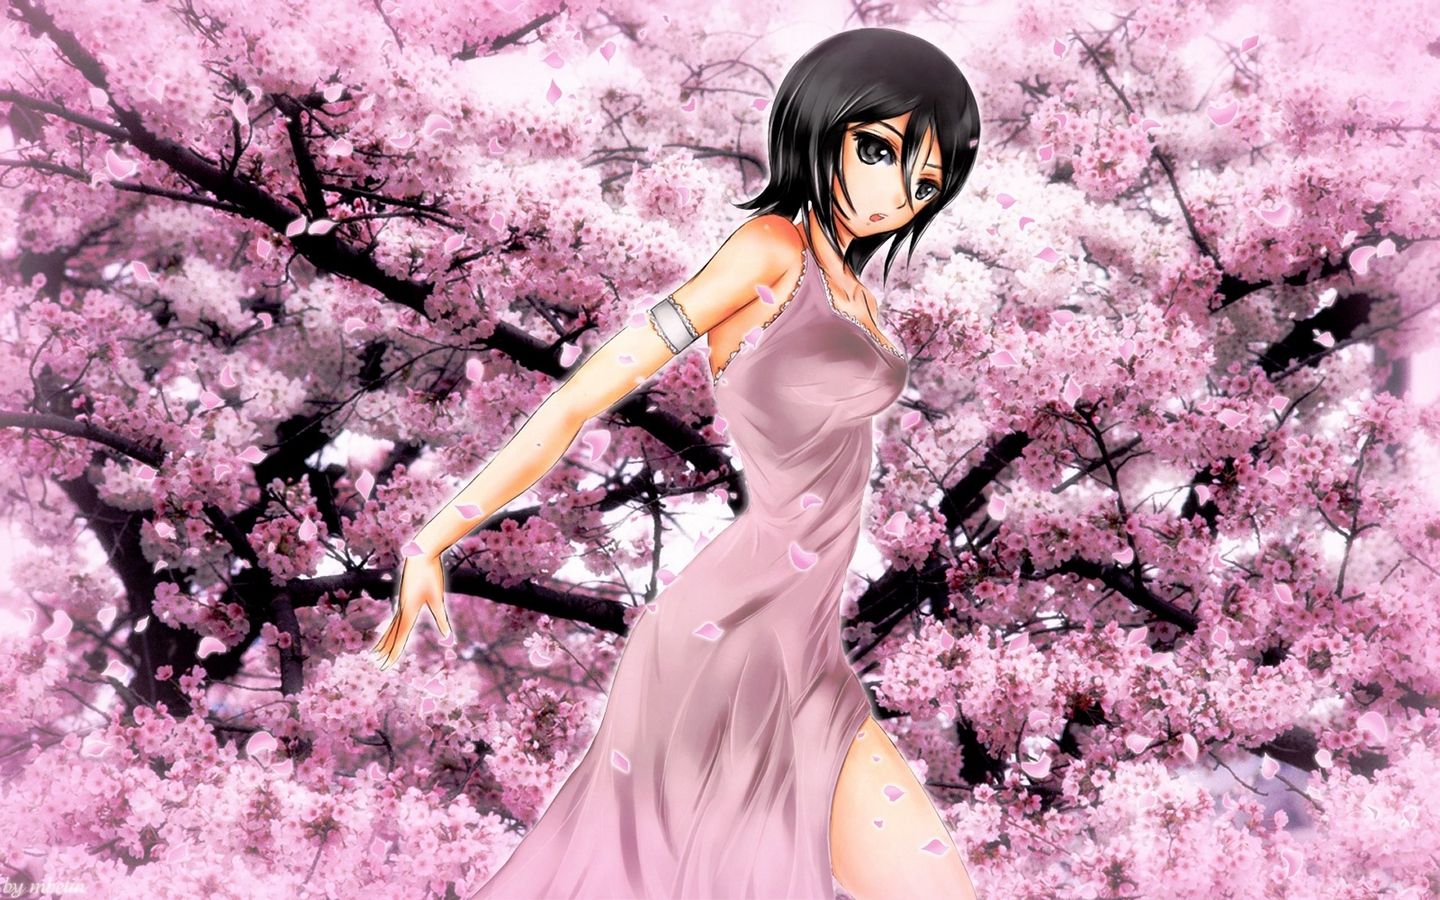 Download wallpaper 1440x900 anime, girl, garden, flower, sakura